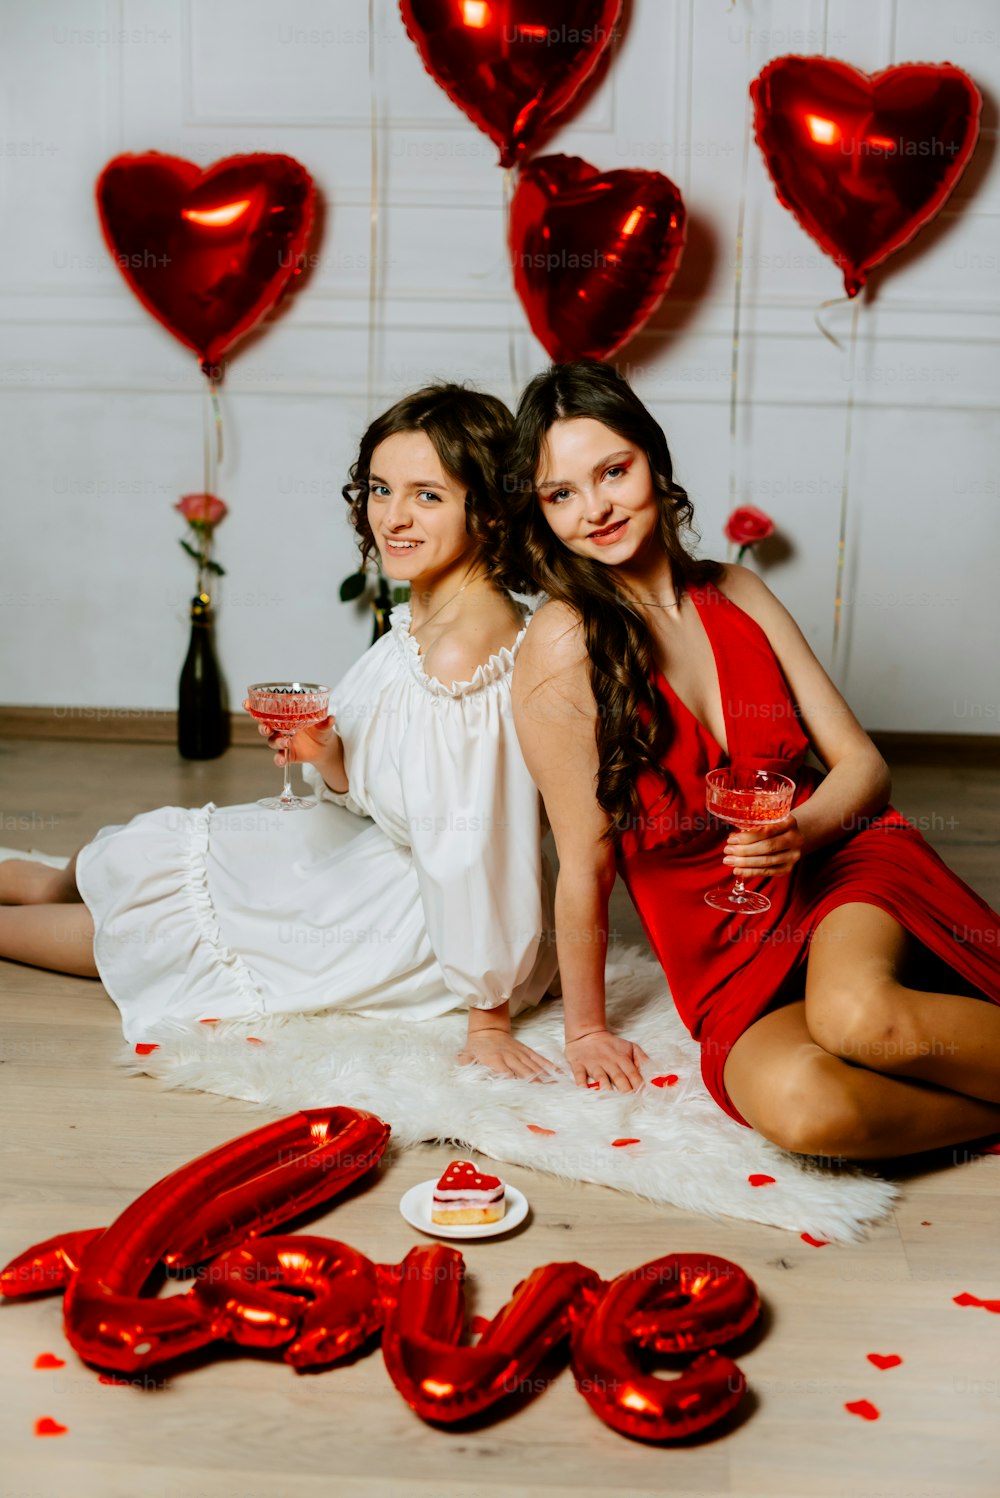 Deux femmes assises par terre avec des ballons rouges